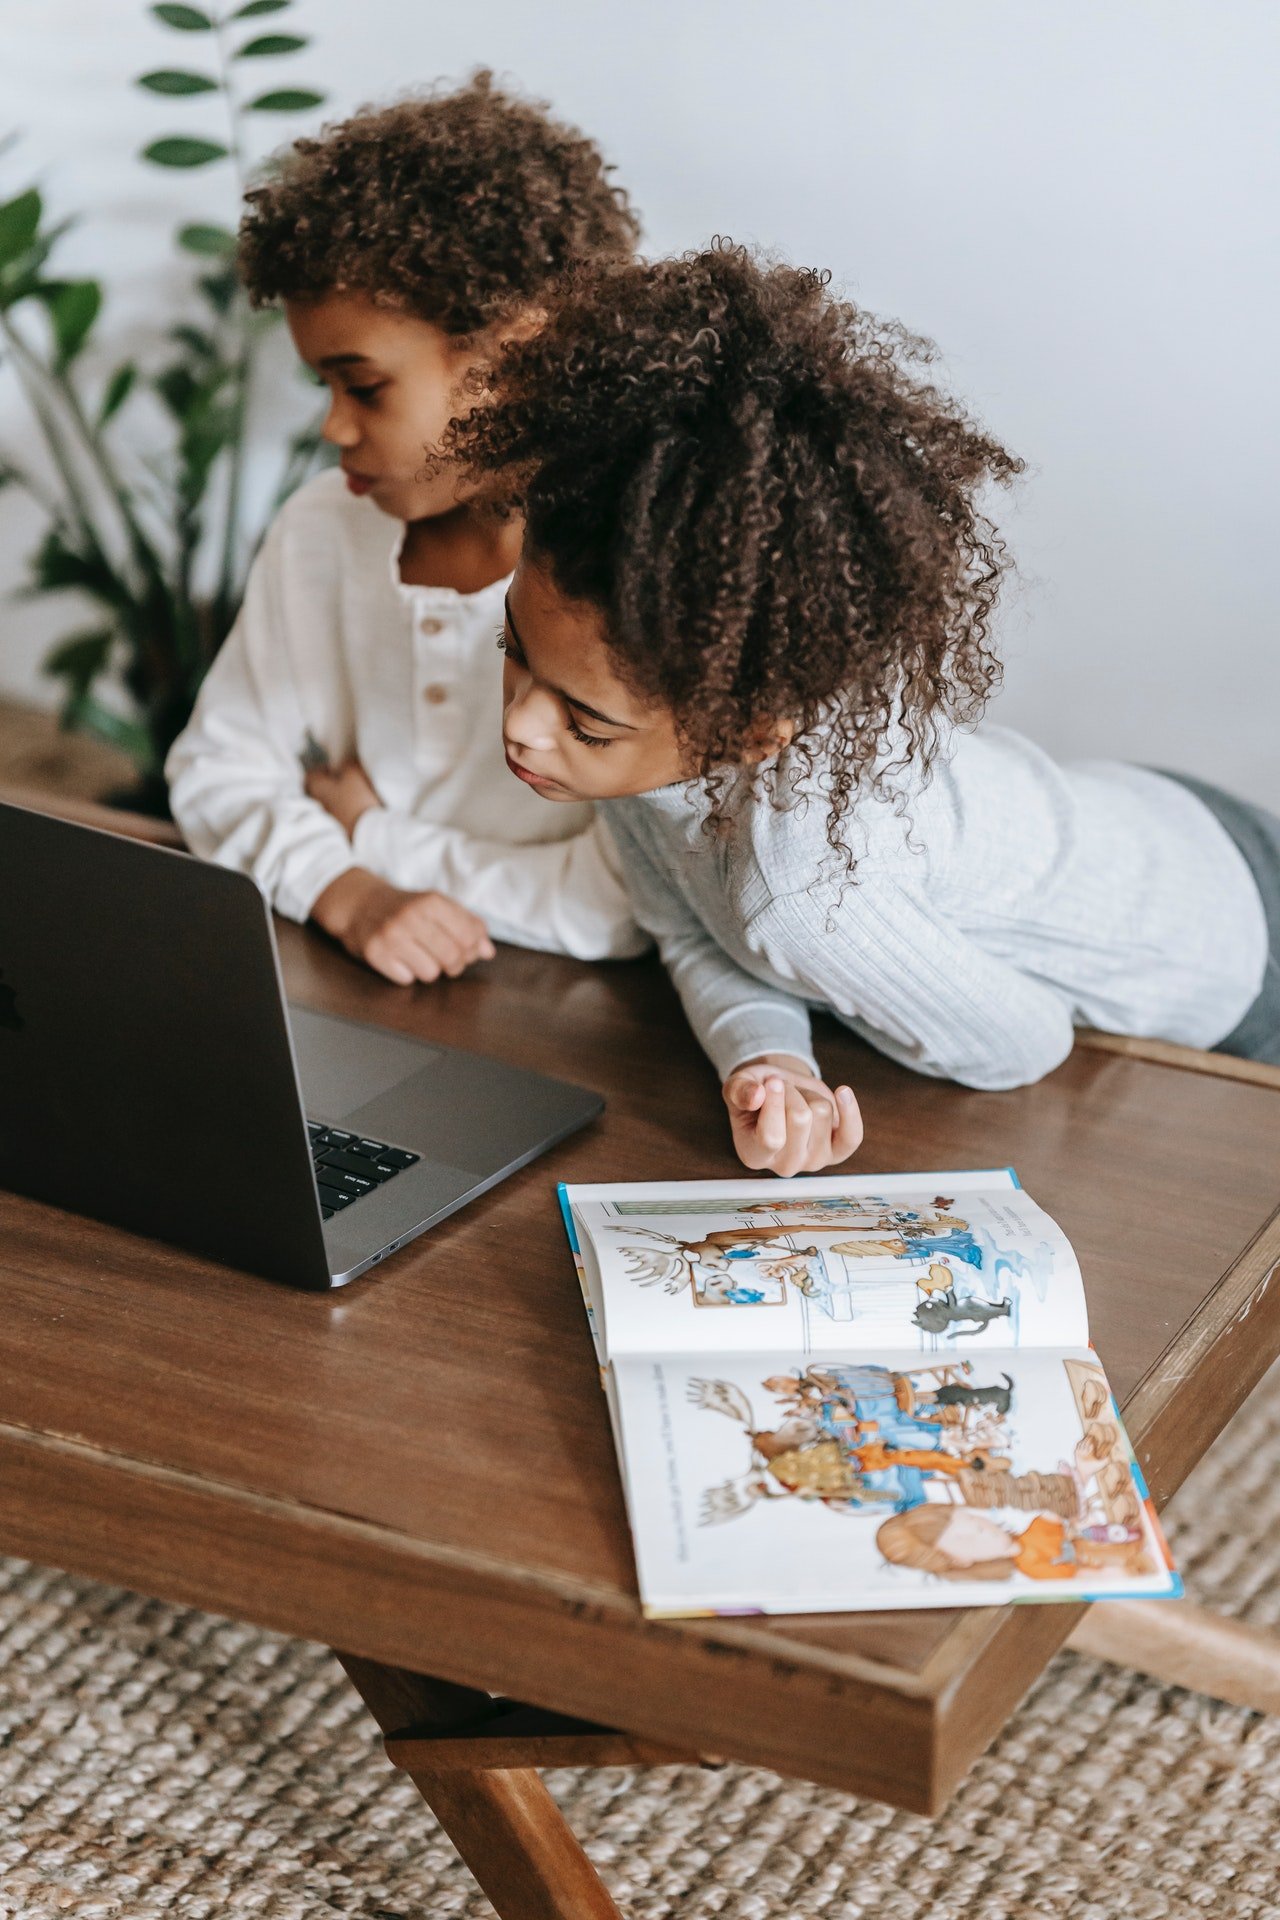 Zwei Kinder schauen auf einen Laptop | Quelle: Pexels